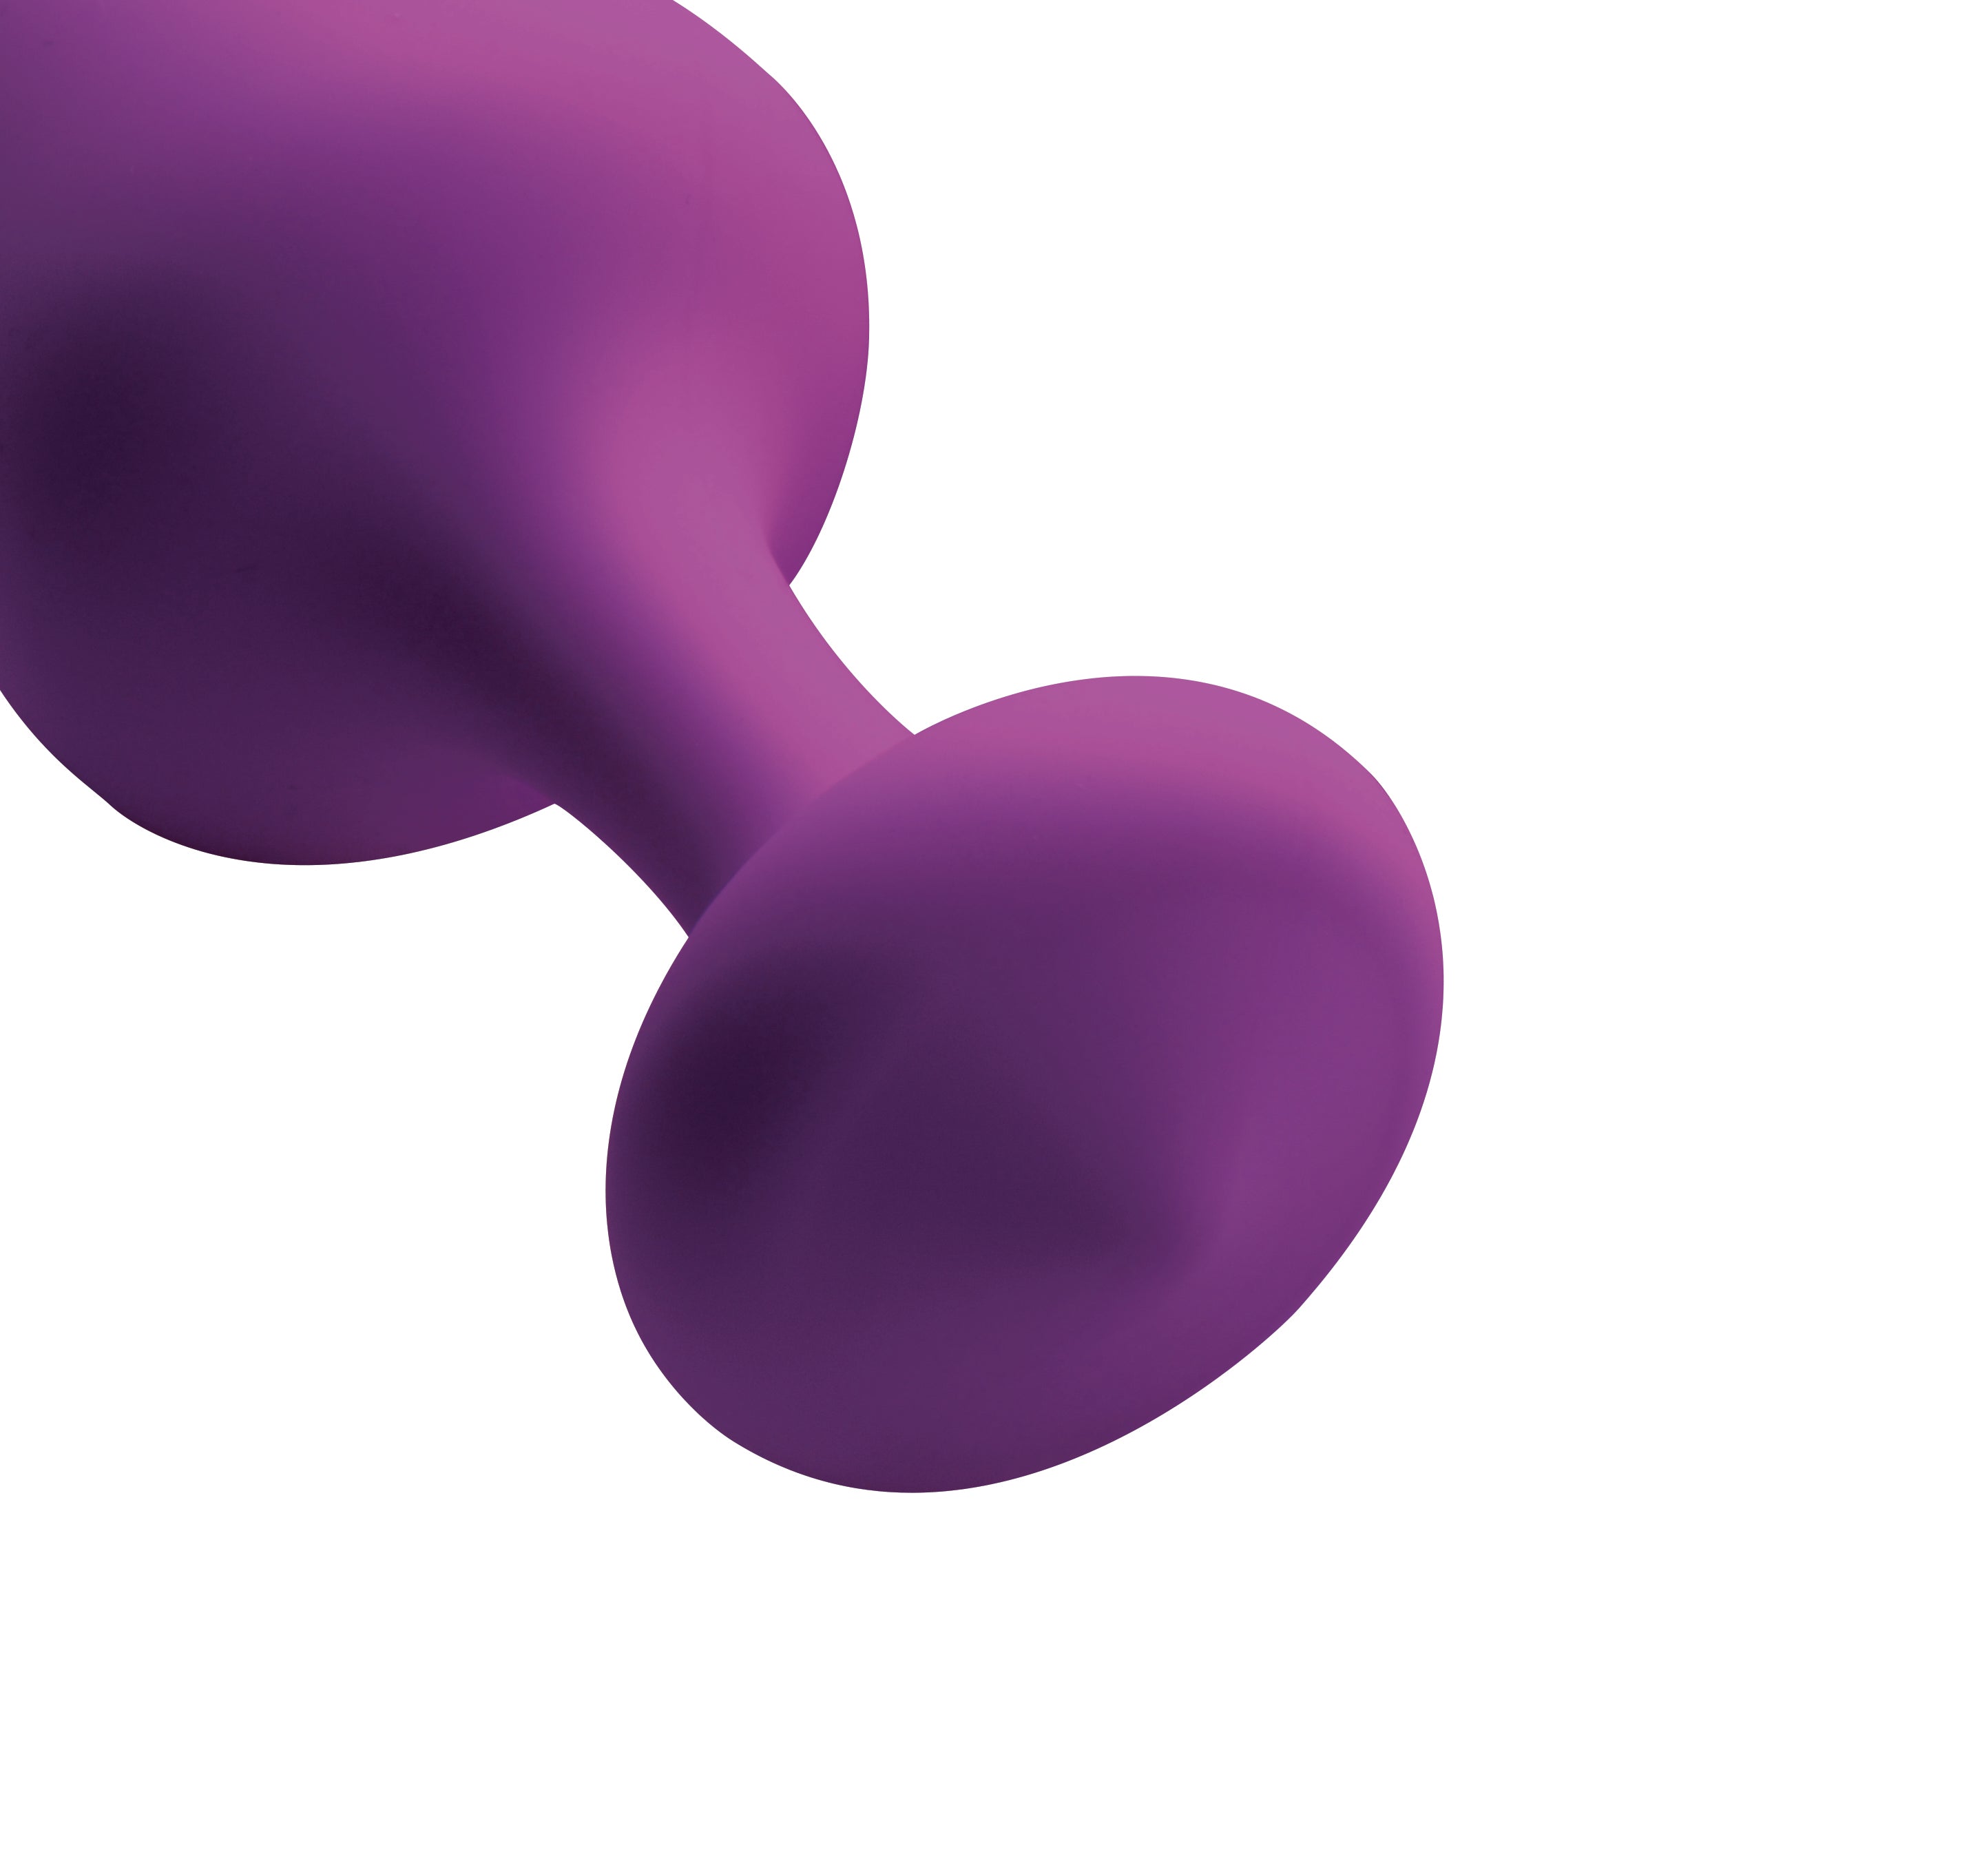 Frisky - Purple Pleasures 3 Piece Silicone Anal Plugs